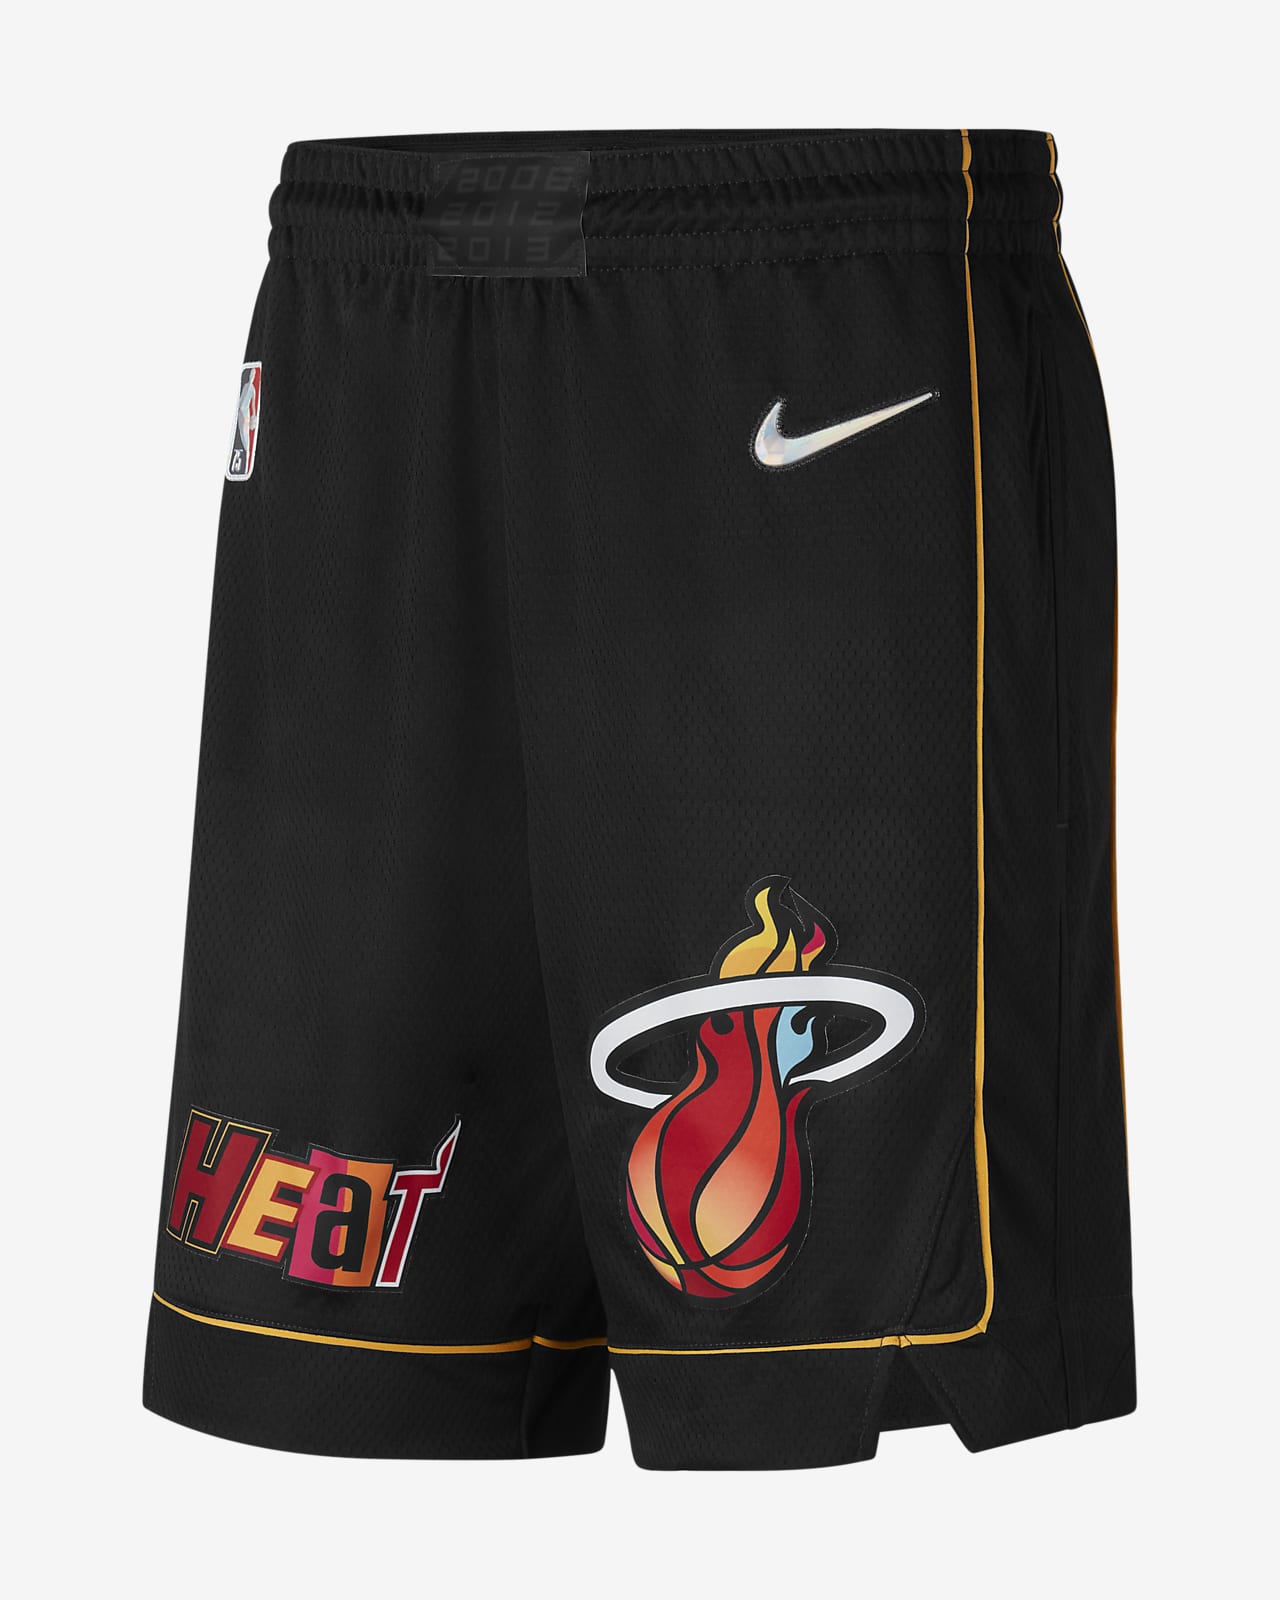 Miami Heat City Edition Pantalón corto Nike Dri-FIT Swingman de la NBA - Hombre